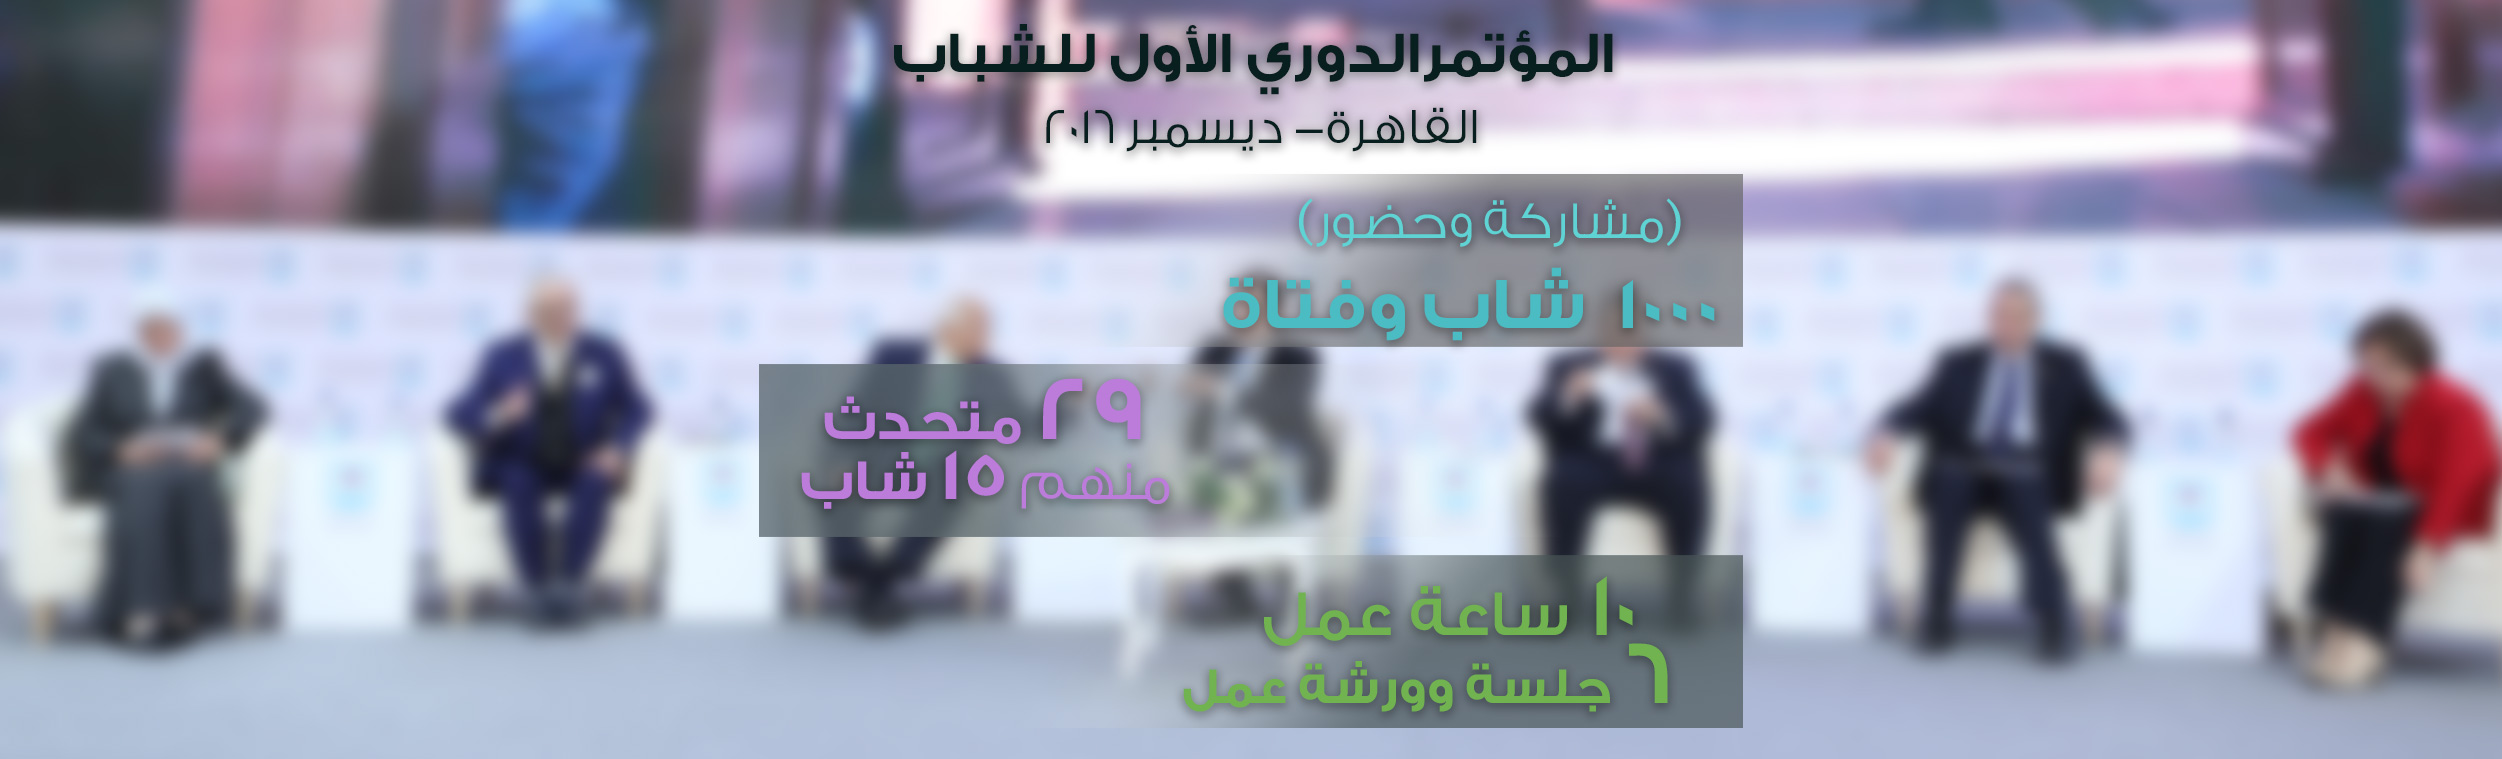 Conference-Masa-arabic١